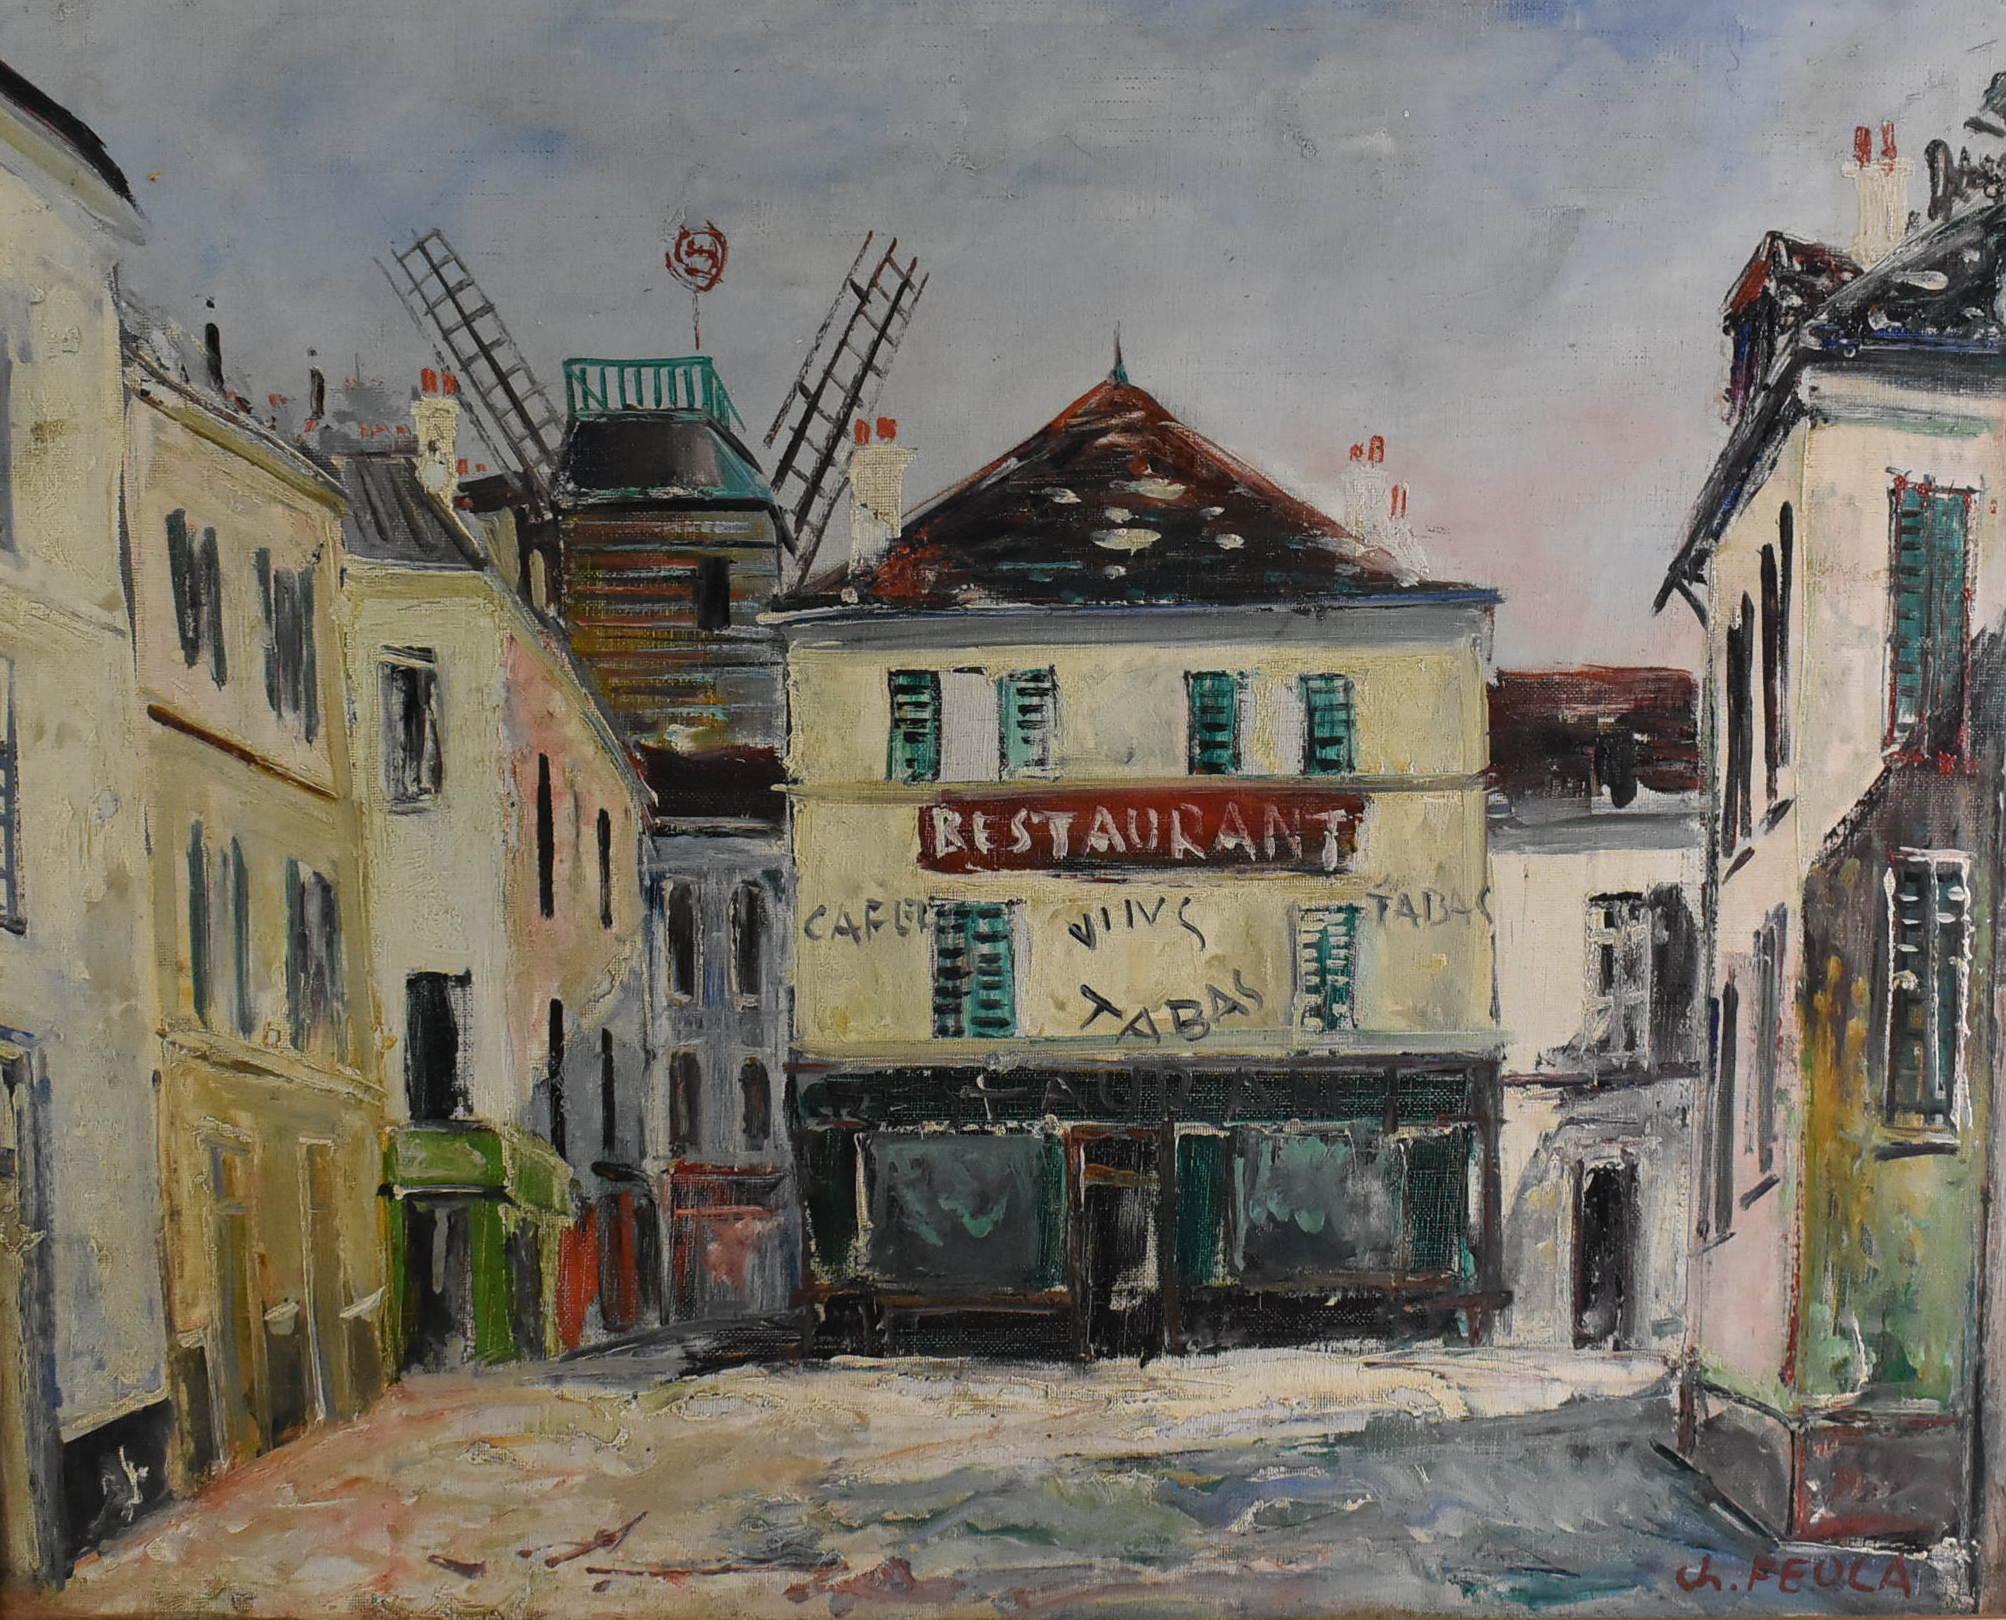 Öl auf Leinwand von Charles Feola, 1917-1994. Impressionistisches Gemälde auf Leinwand mit einer Pariser Straßenszene. Signiert unten rechts. Sehr guter Zustand. Bild Größe Maßnahmen 22,44 